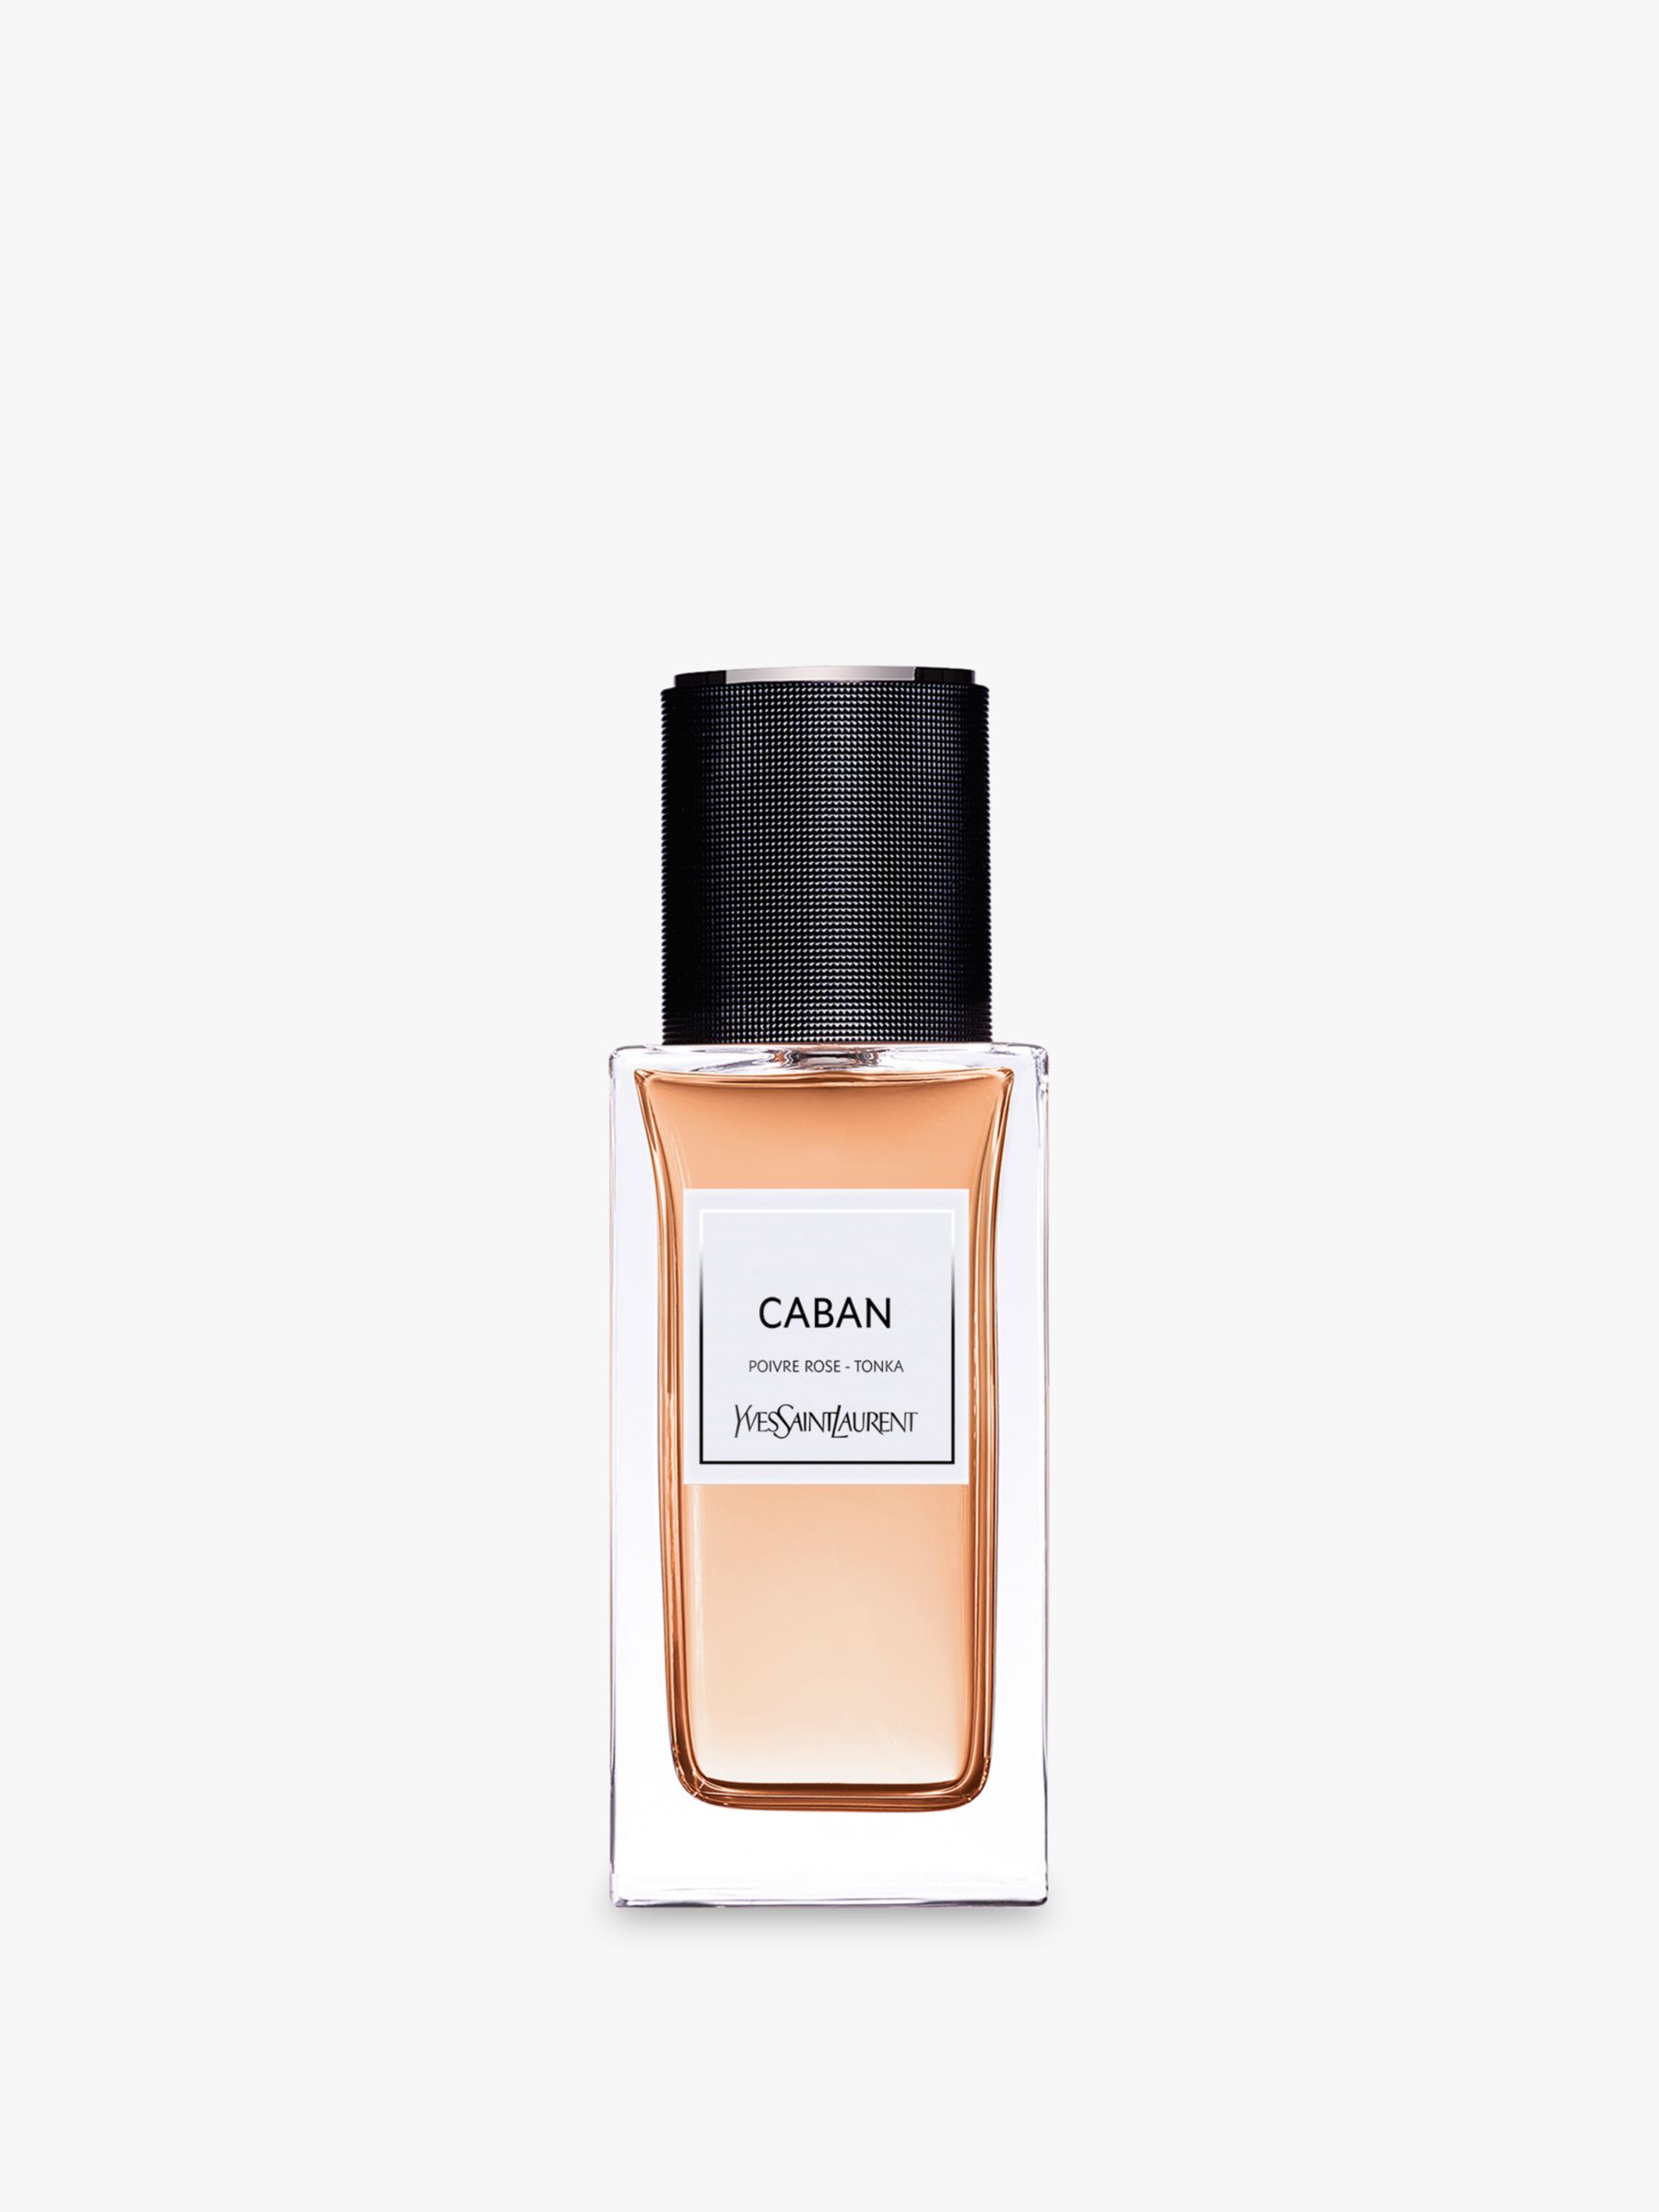 Yves Saint Laurent Caban Eau de Parfum at John Lewis & Partners